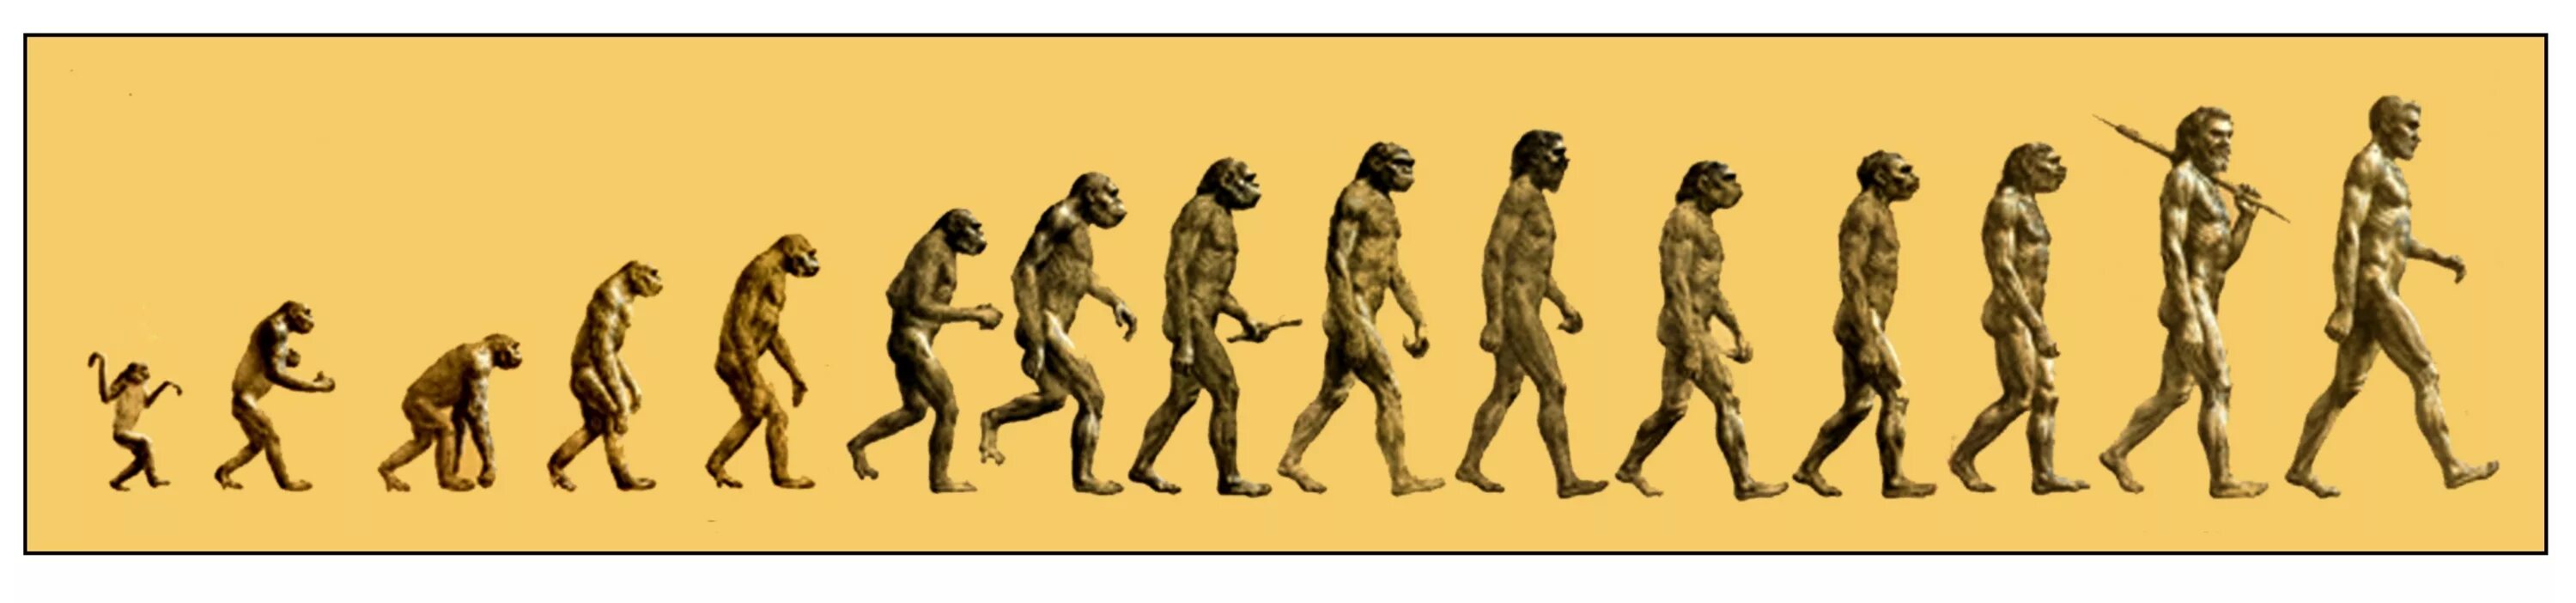 Австралопитек неандерталец хомо сапиенс. Этапы эволюции человека,хомо сапиенс. Австралопитек Эволюция. Этапы эволюции хомо сапиенс. Этапы эволюции человека австралопитек